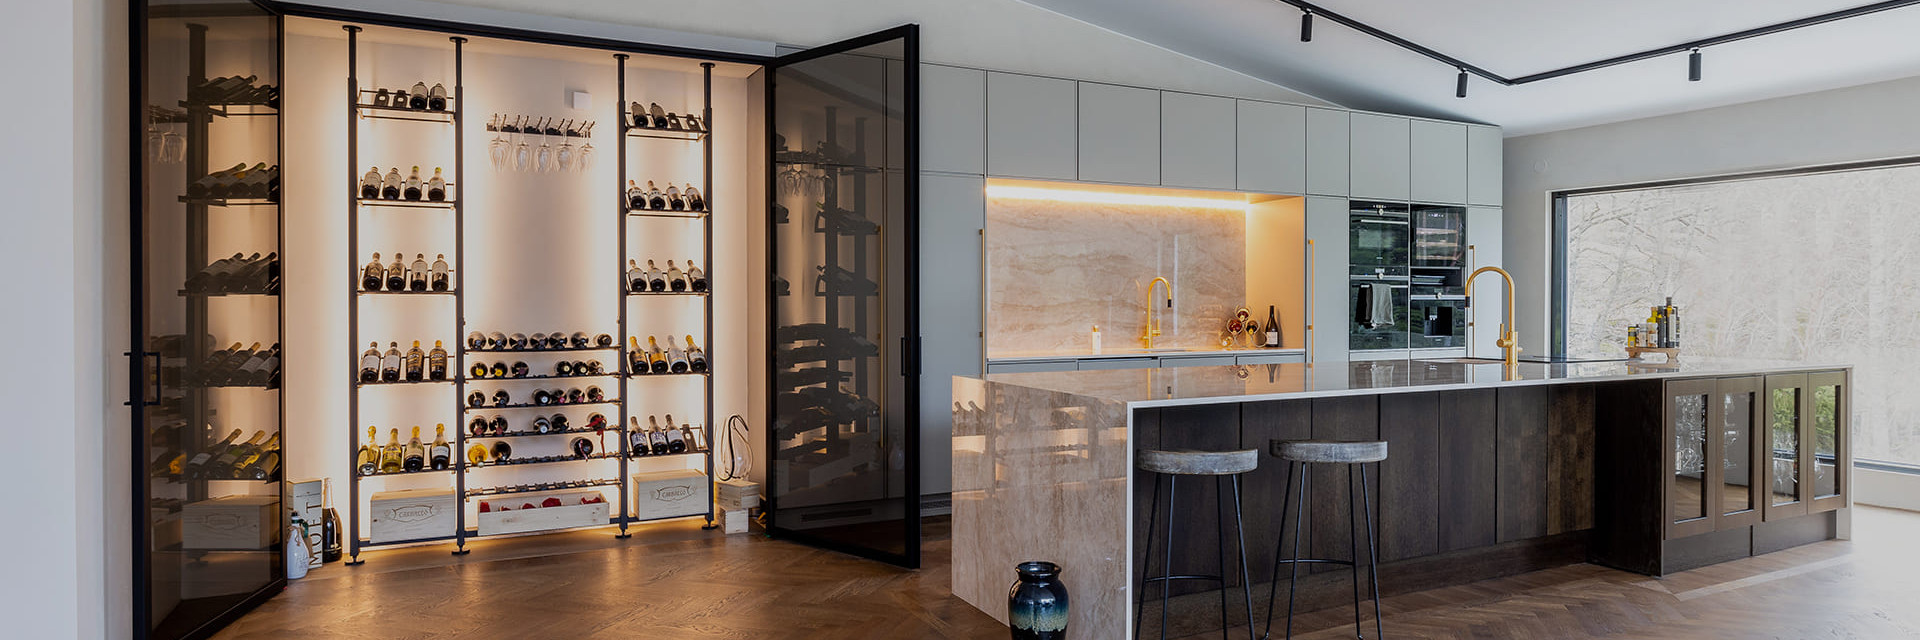 Maßgeschneidertes Innenarchitekturprojekt - Grundriss eines individuellen Weinkellers - Weinkellerbereich mit schwarzen Metallweinregalen, installiert in einer Nische an der Wand einer hochwertigen Küche